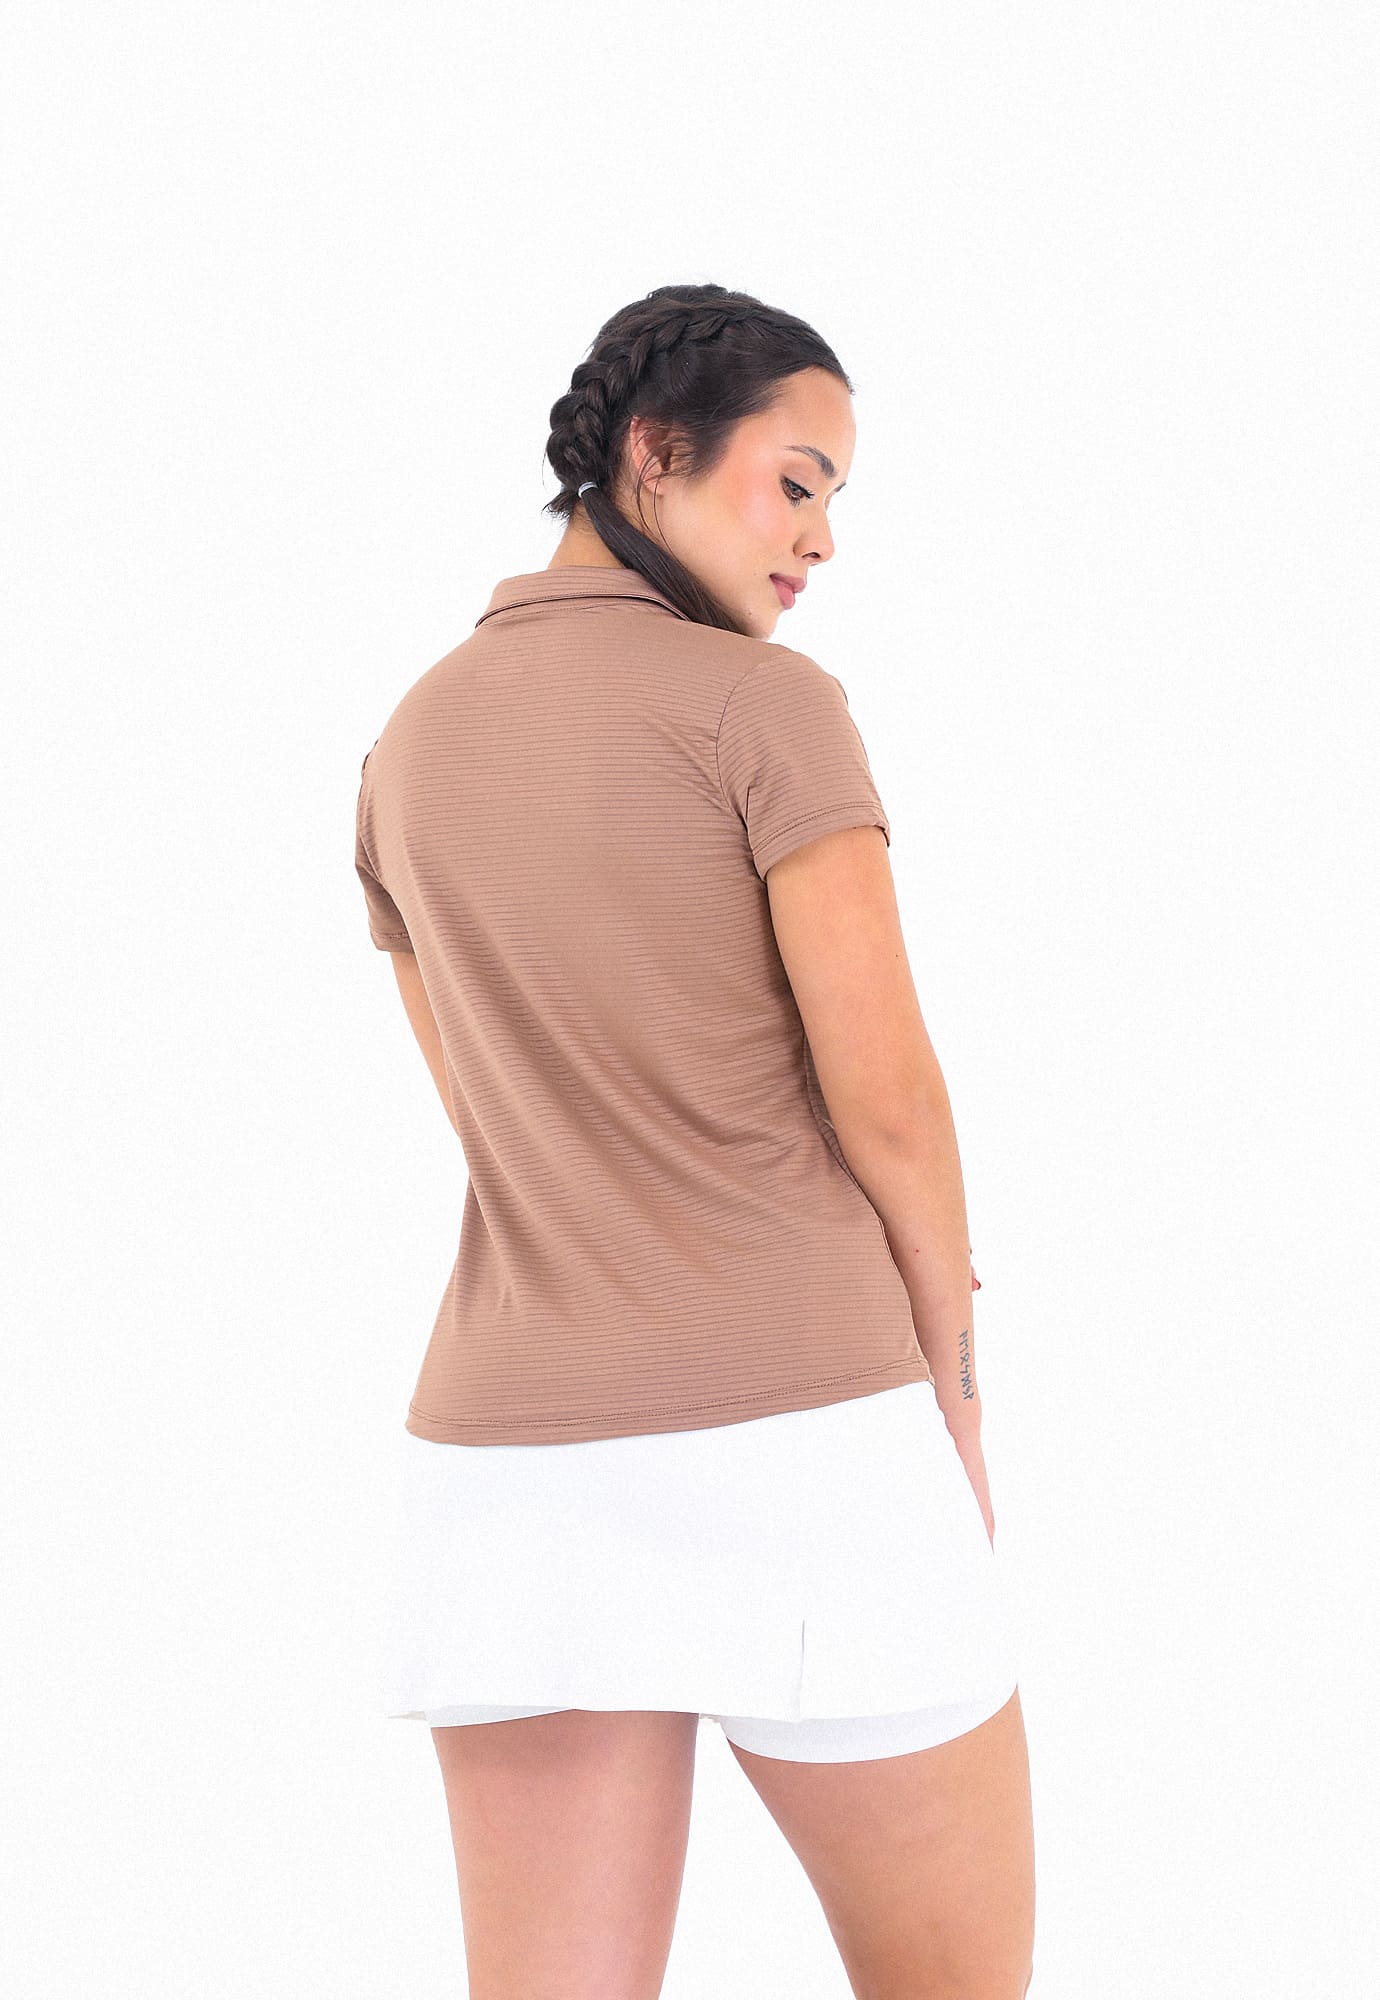 Camiseta deportiva taupe con cuello camisero y transfer reflectivo en frente para mujer